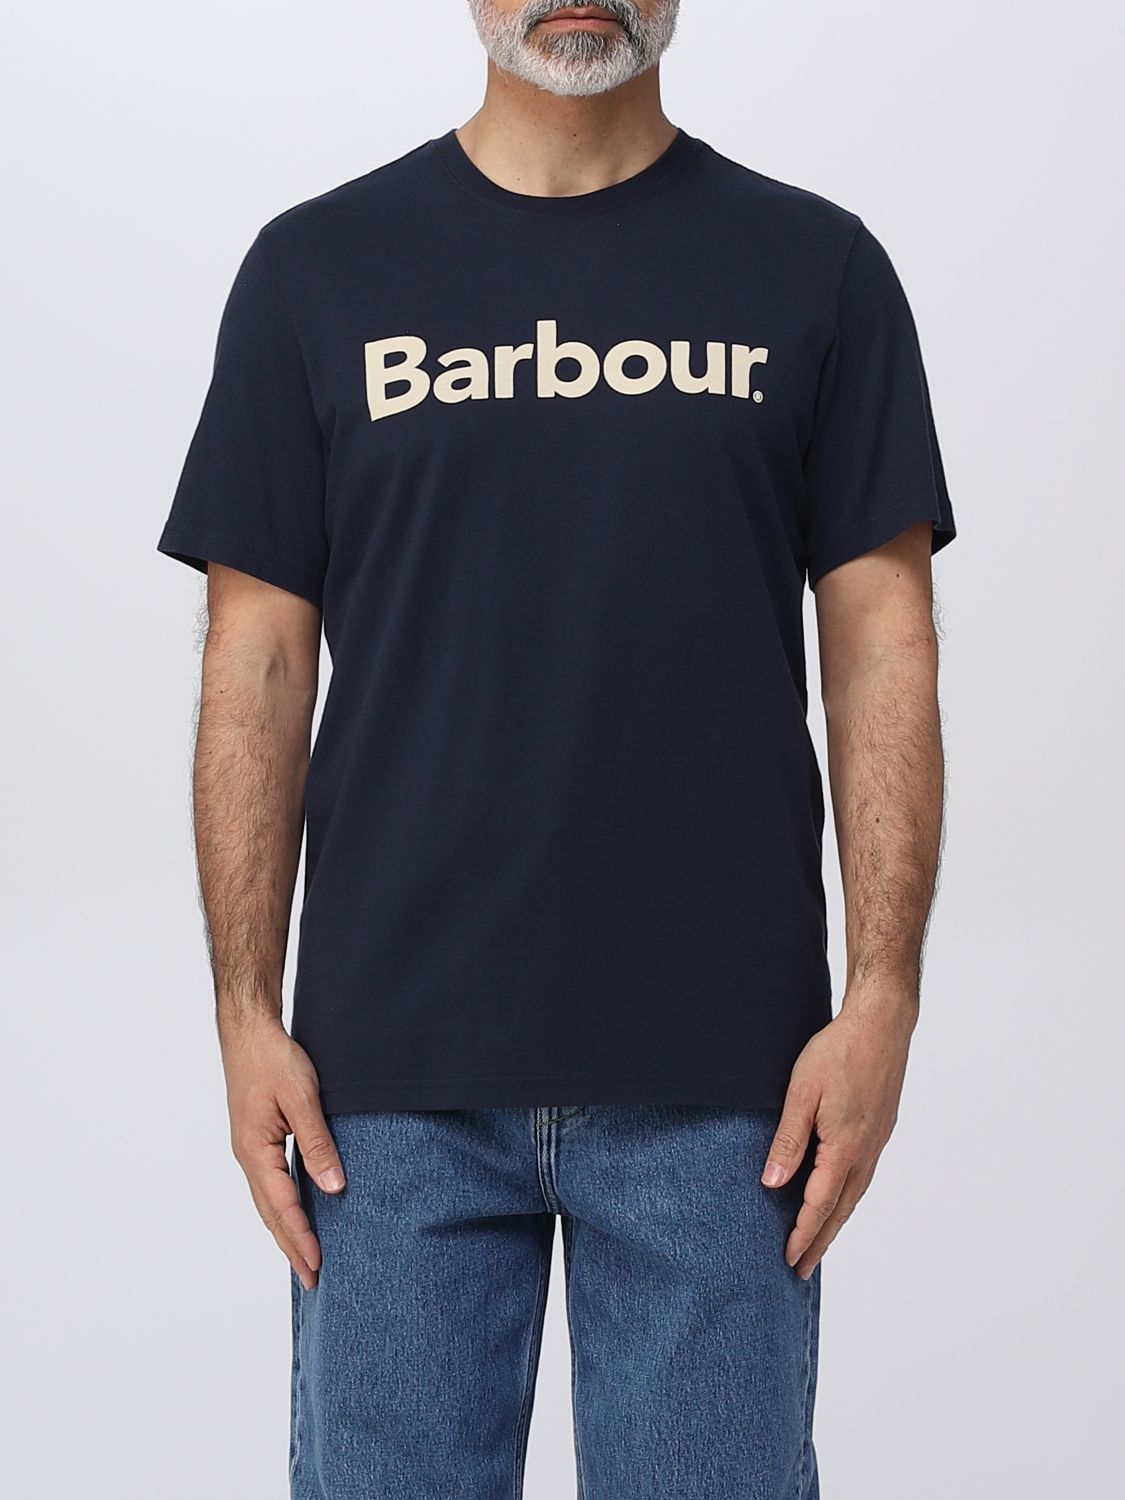 BARBOUR T-SHIRT BARBOUR MEN,384711009